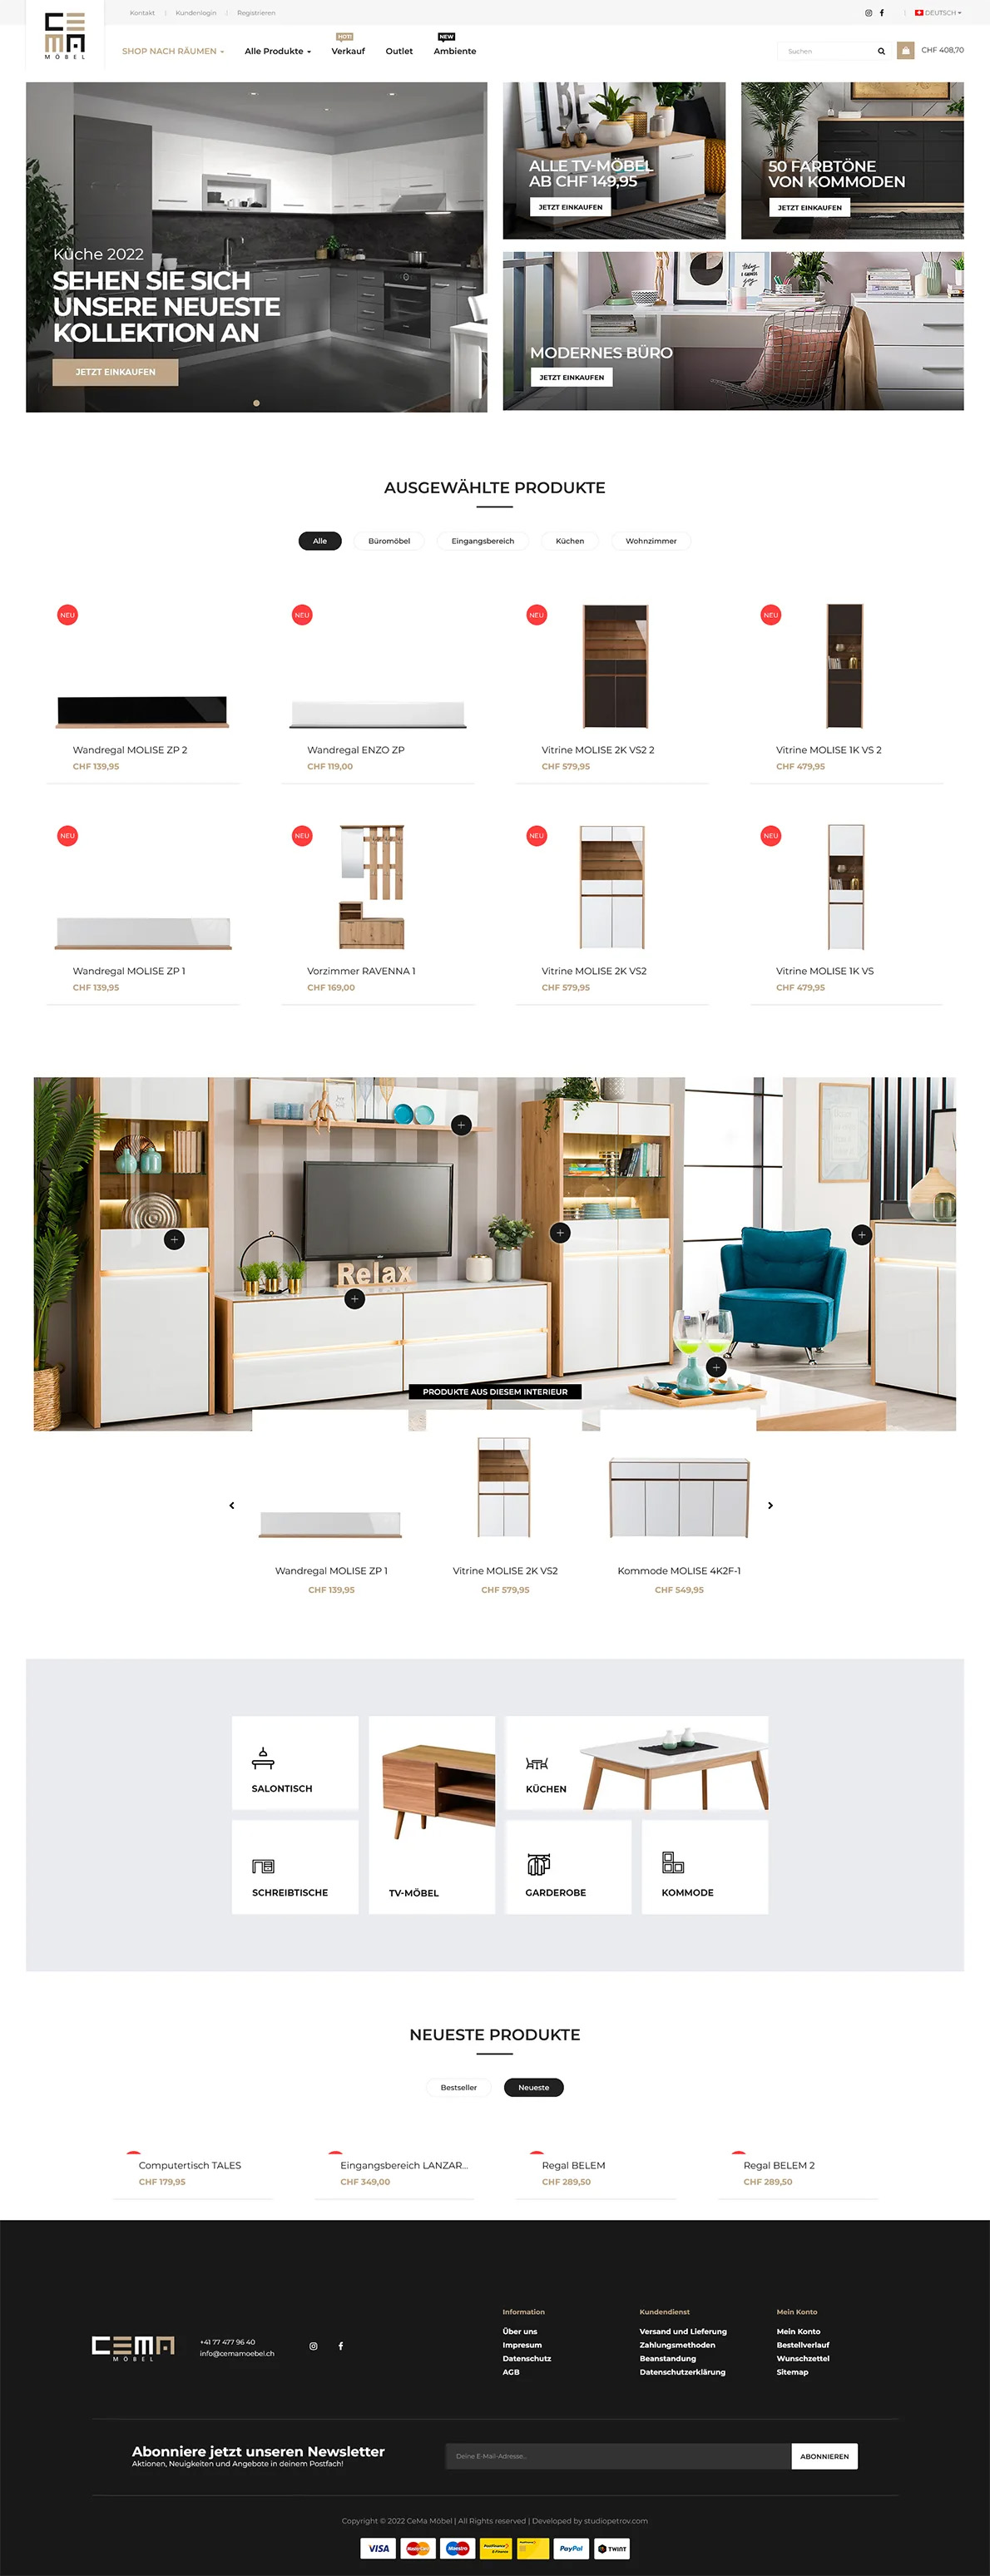 CeMa furniture webshop